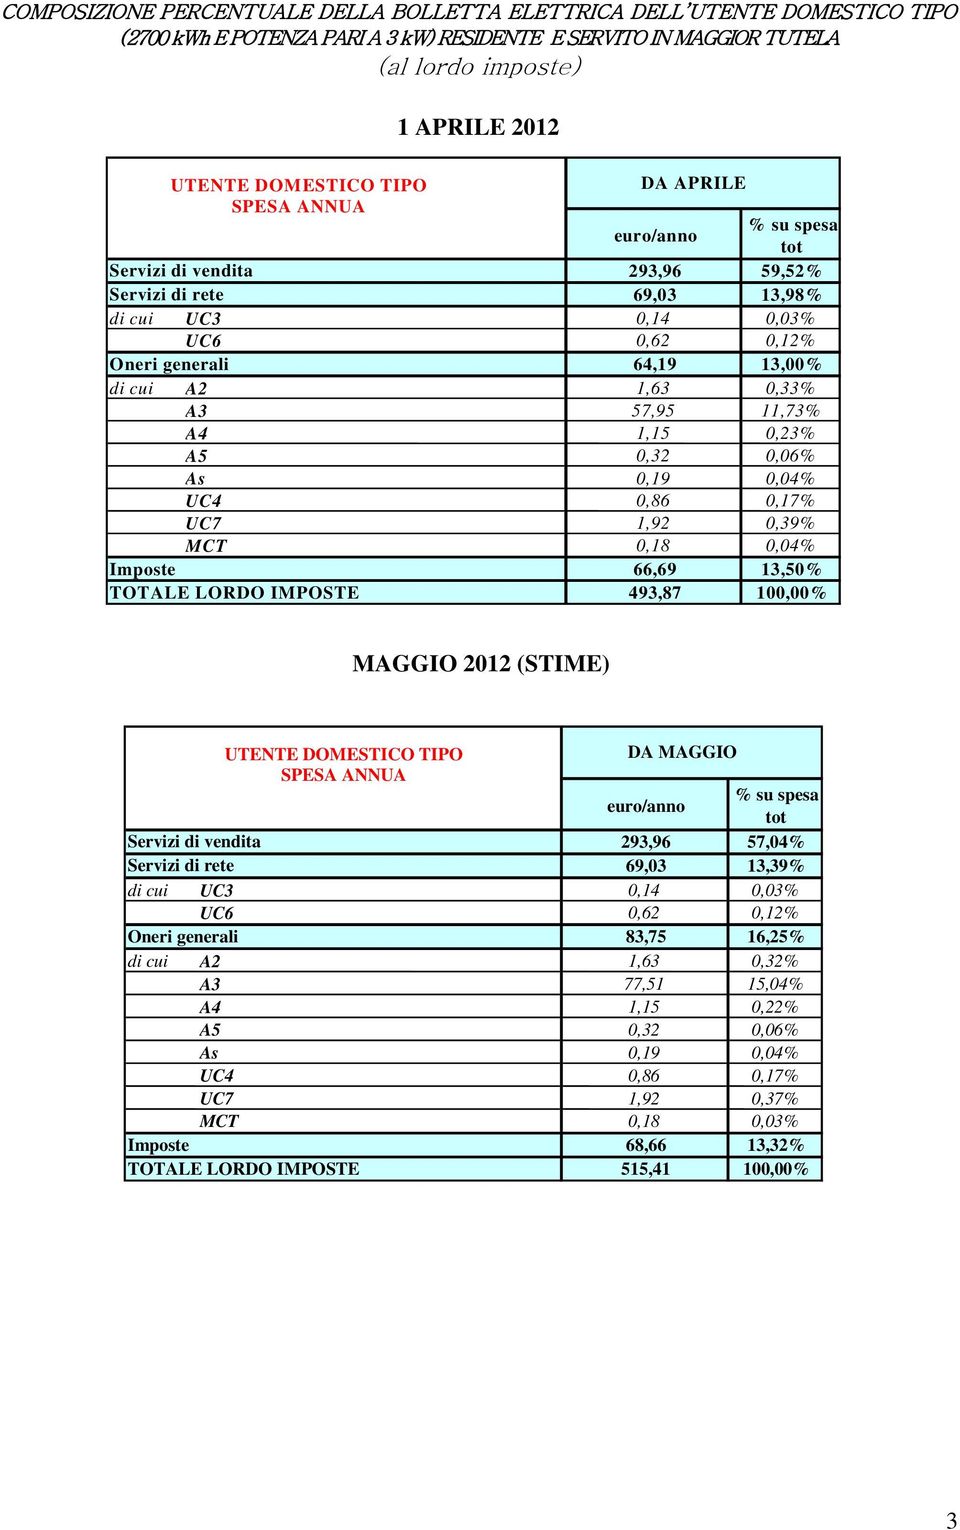 A3 57,95 11,73% A4 1,15 0,23% A5 0,32 0,06% As 0,19 0,04% UC4 0,86 0,17% UC7 1,92 0,39% MCT 0,18 0,04% Imposte 66,69 13,50% TOTALE LORDO IMPOSTE 493,87 100,00% MAGGIO 2012 (STIME) UTENTE DOMESTICO